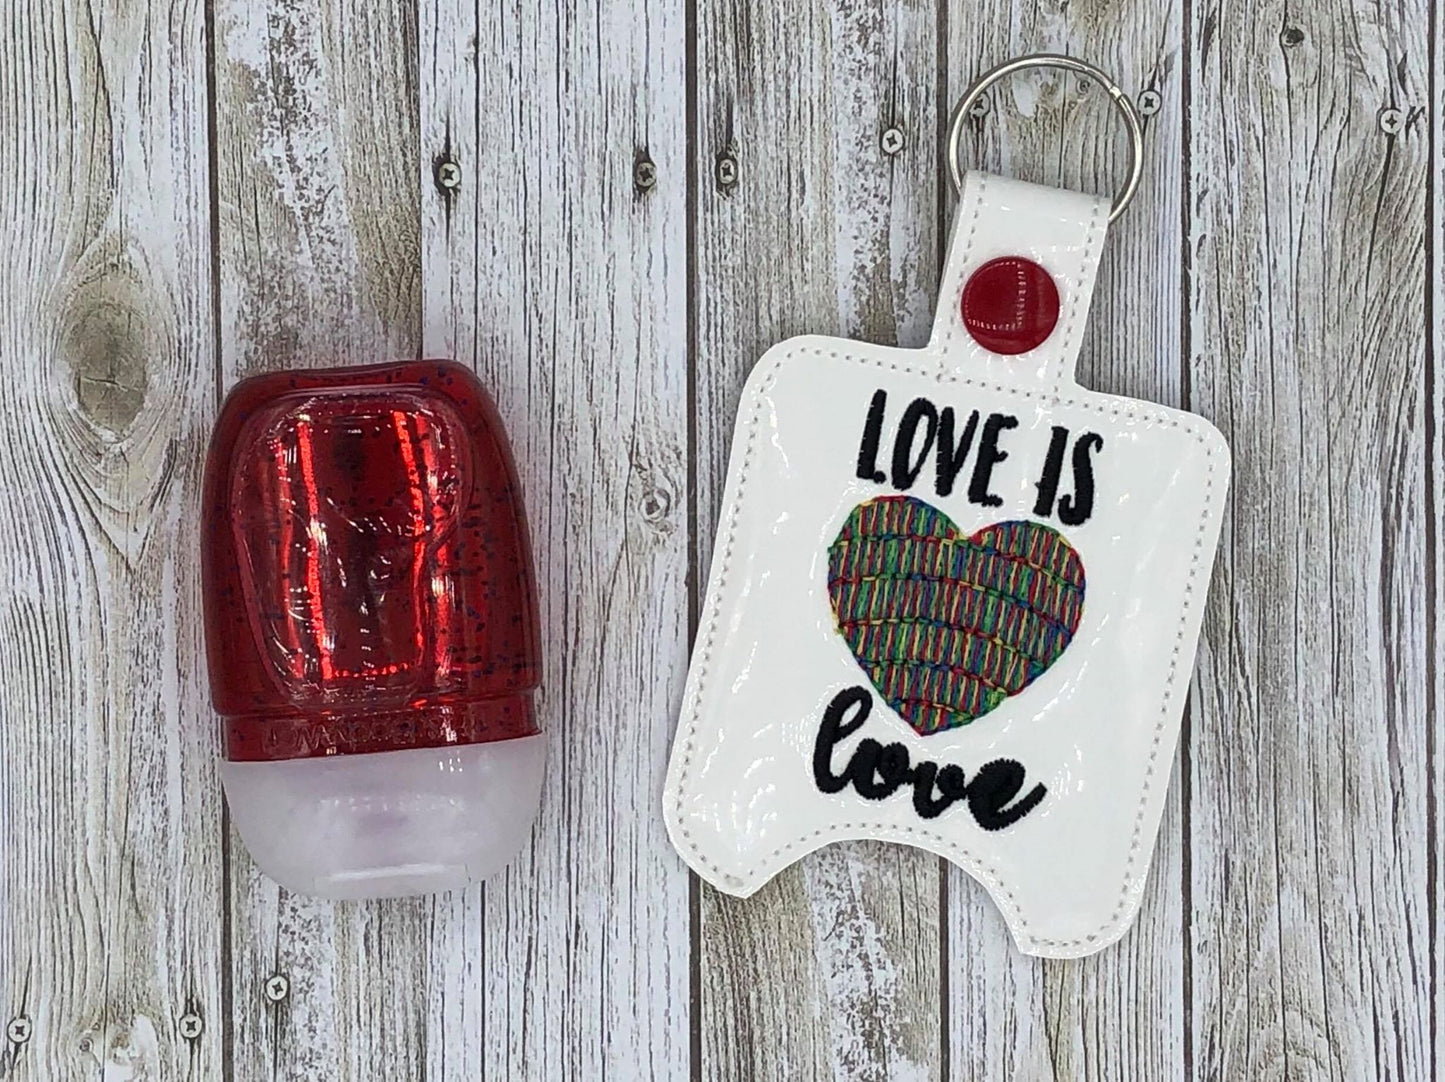 Love is Love Sanitizer Holder - DIGITAL Embroidery DESIGN